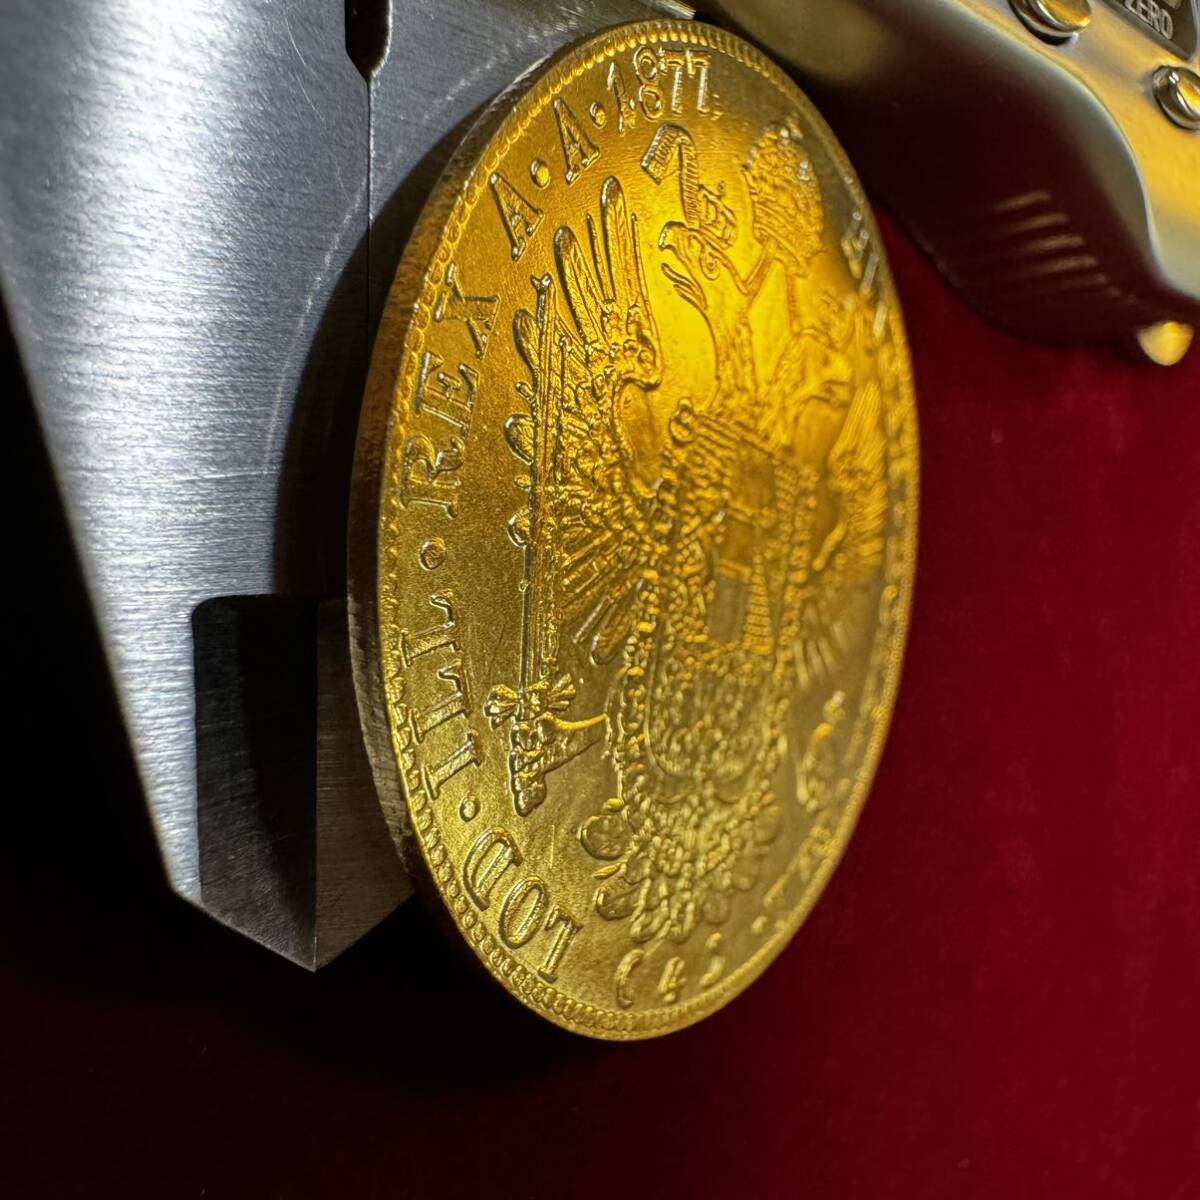 オーストリア帝国 硬貨 古銭 フランツ・ヨーゼフ 1 世 1877年 クラウン 国章 紋章 双頭の鷲 4ダカット コイン 金貨 外国古銭の画像3